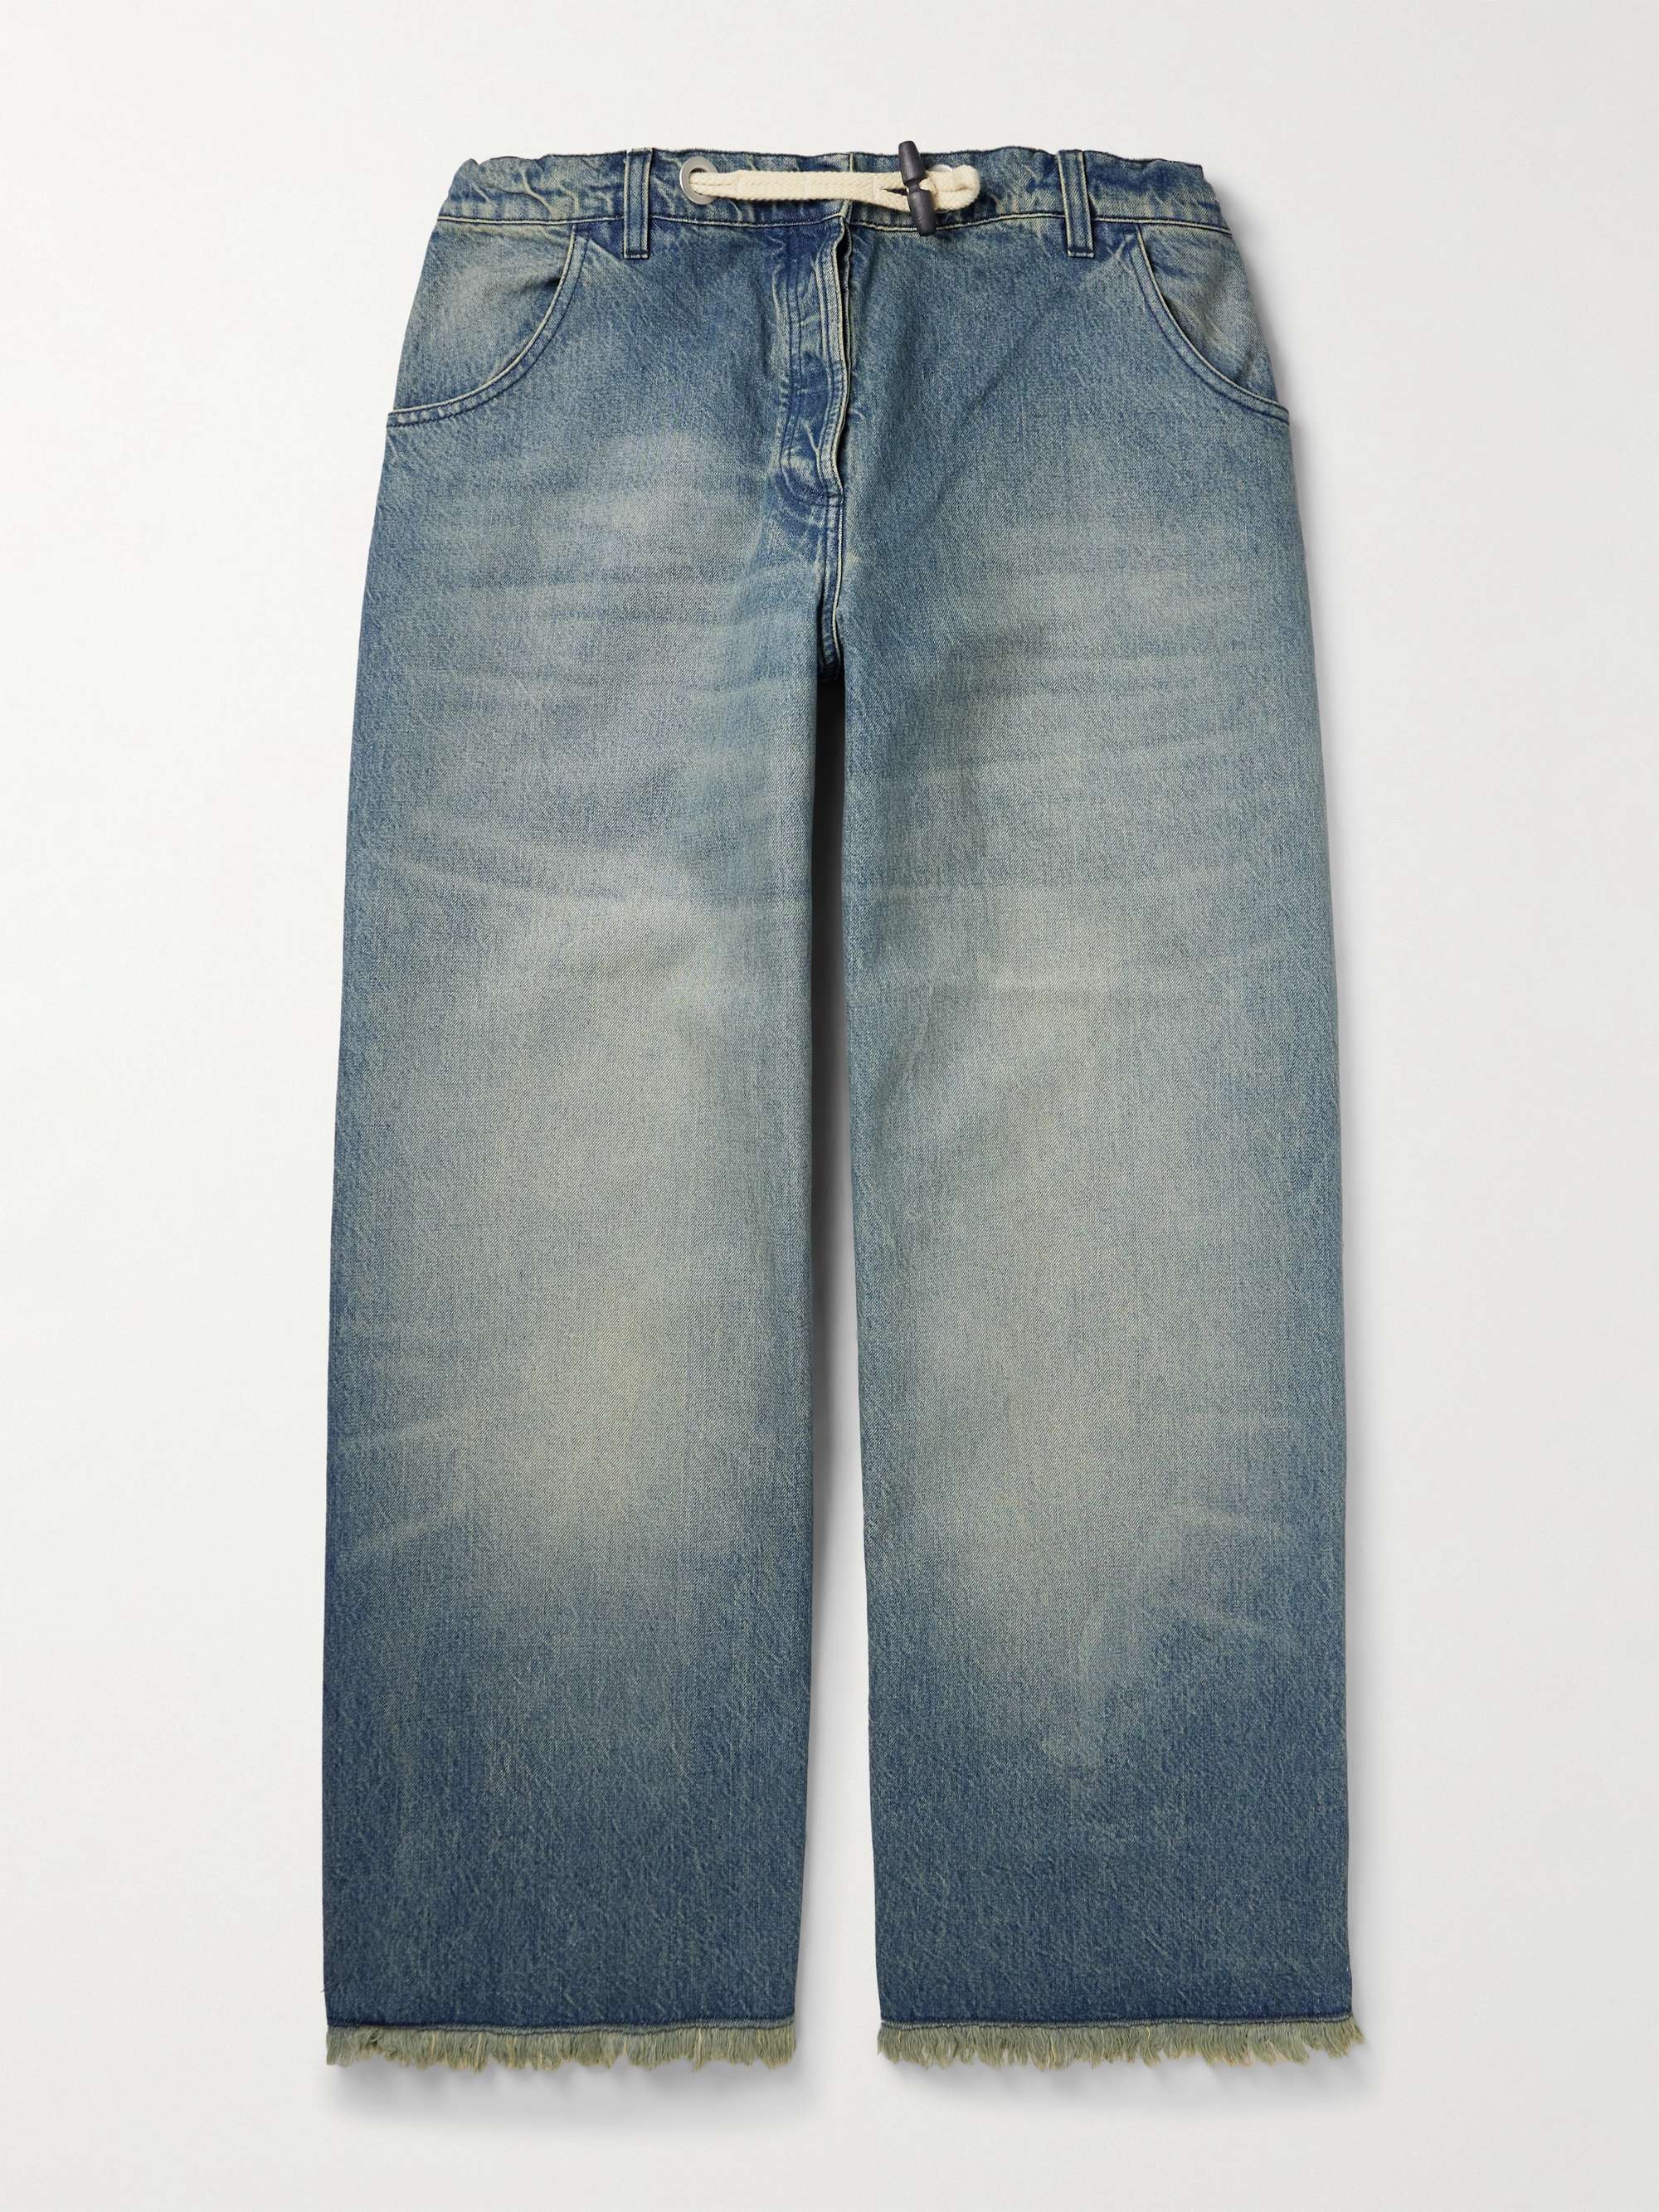 MONCLER GENIUS + Palm Angels Wide-Leg Frayed Jeans for Men | MR PORTER